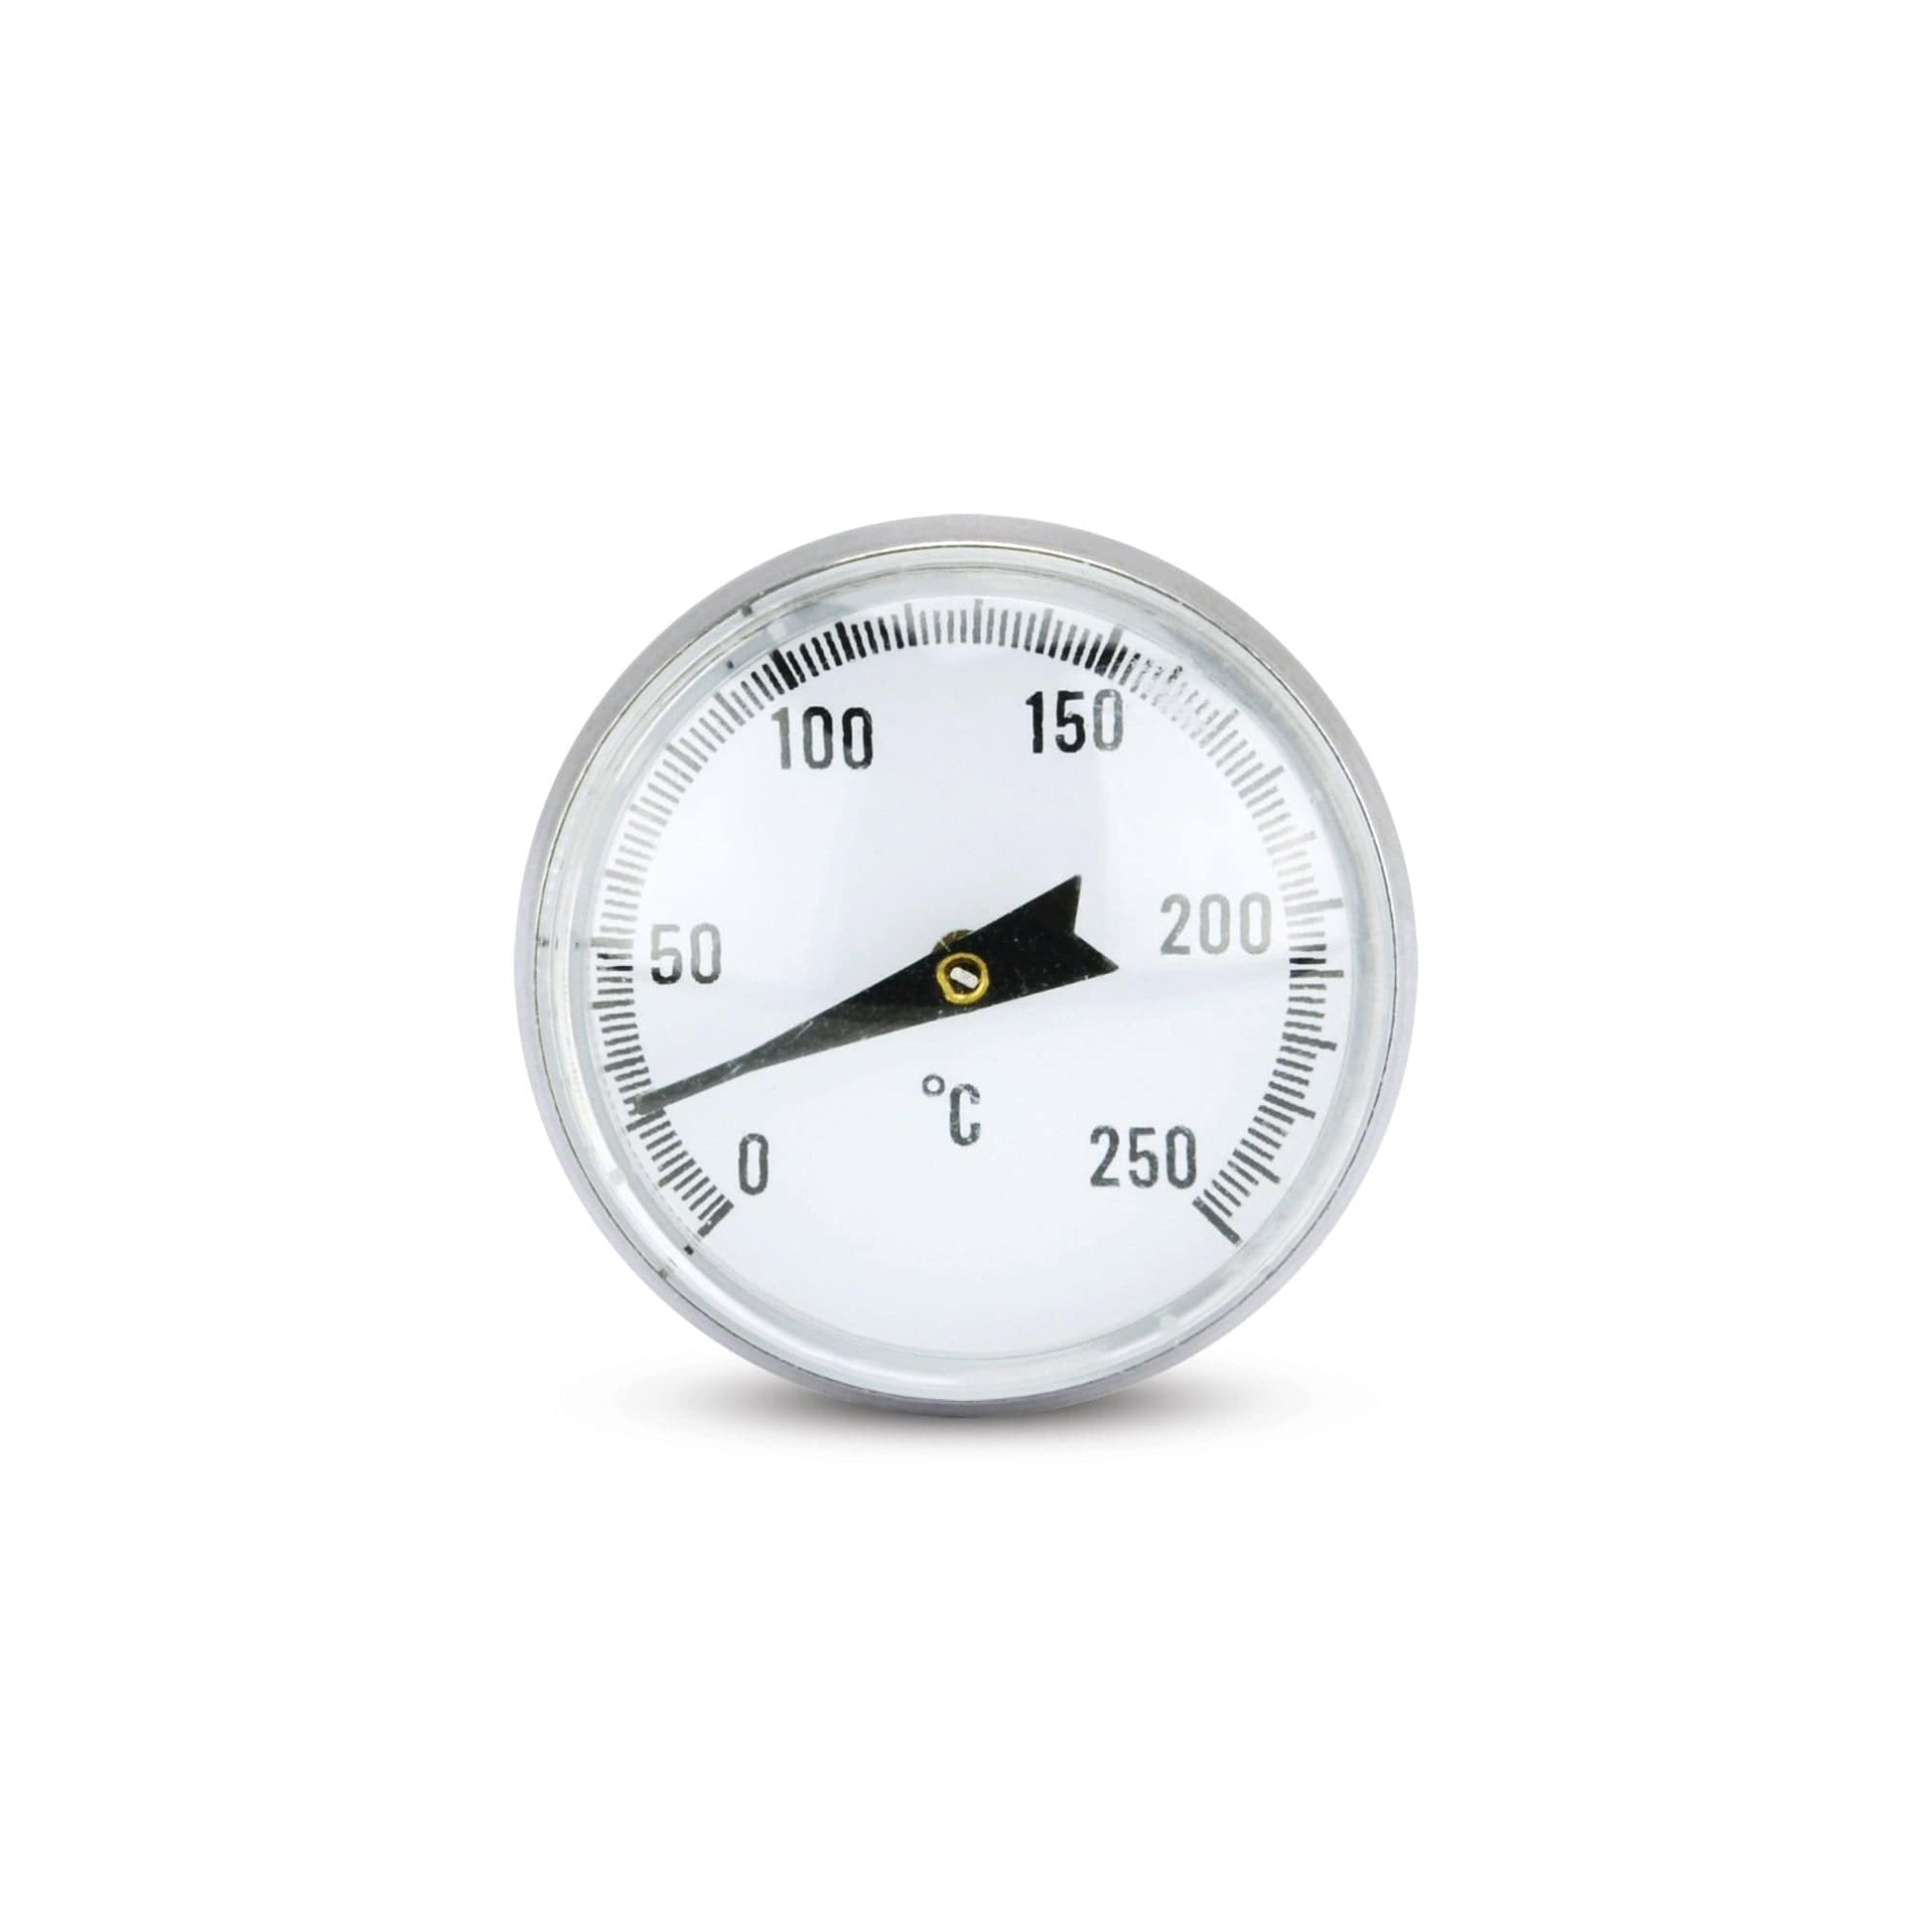 un Thermomètre à sonde à cadran de Thermometer.eu sur fond blanc.